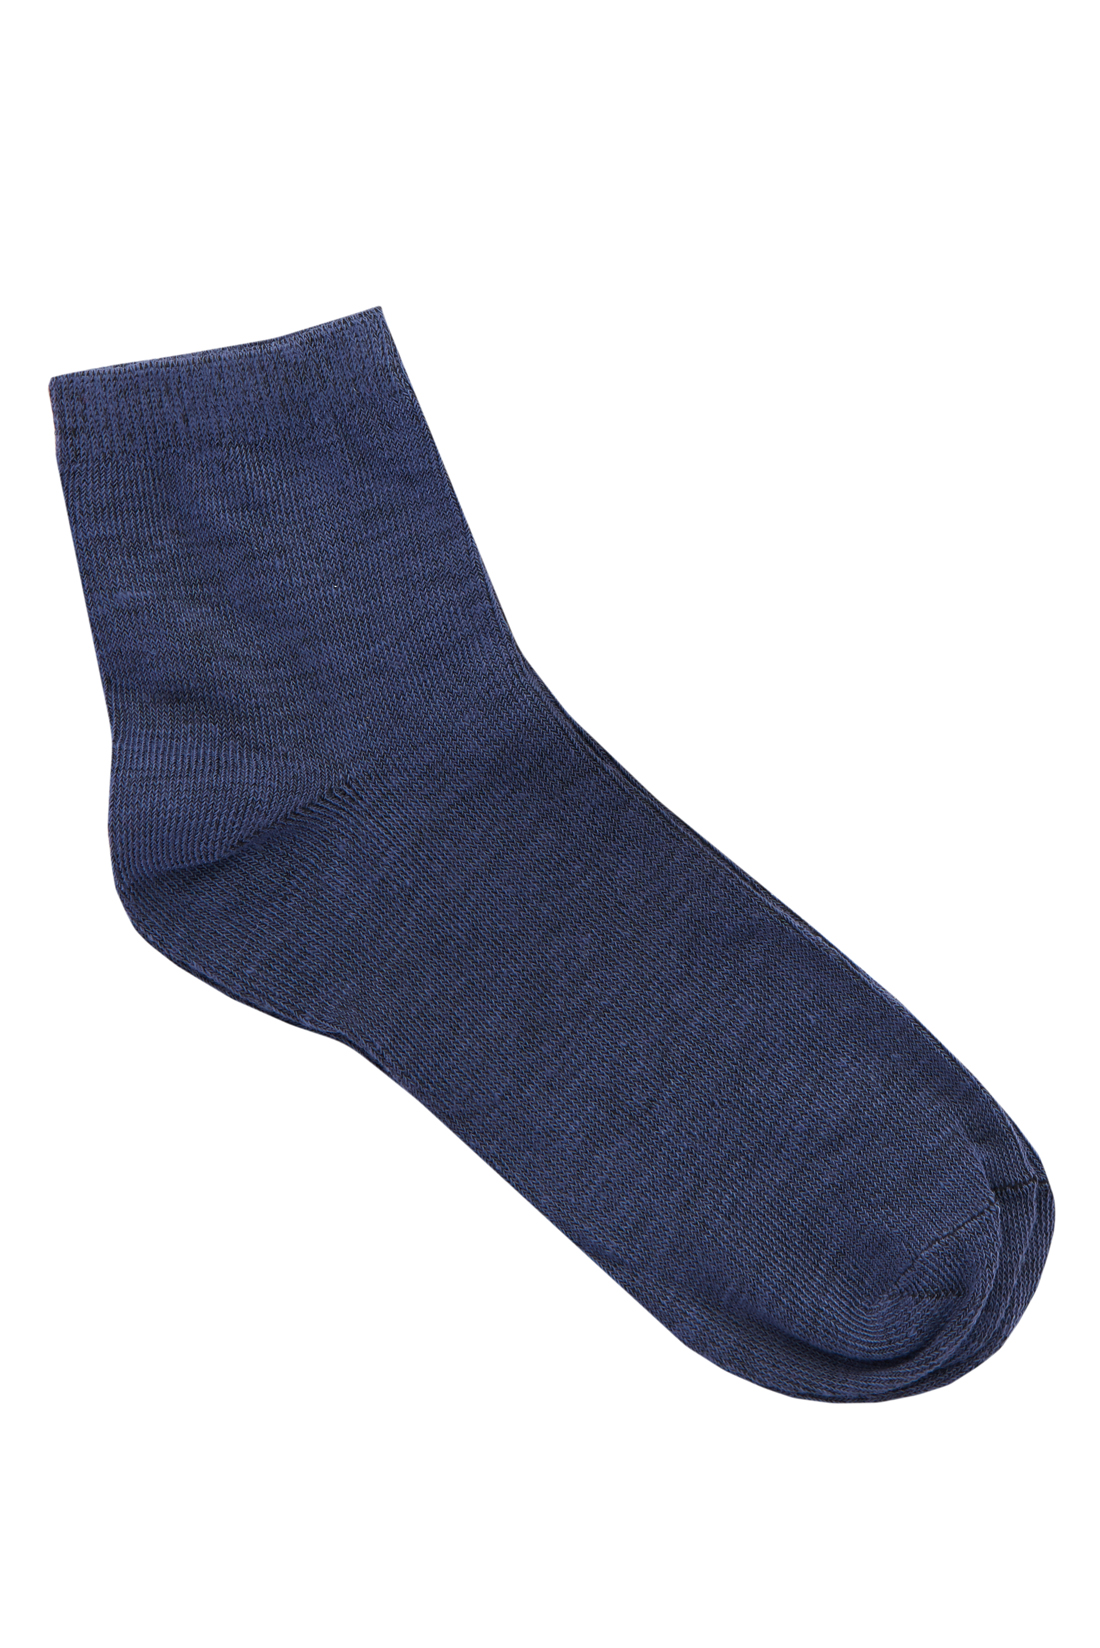 Меланжевые однотонные носки (арт. baon B398038), размер 38/40, цвет baltic blue melange#синий